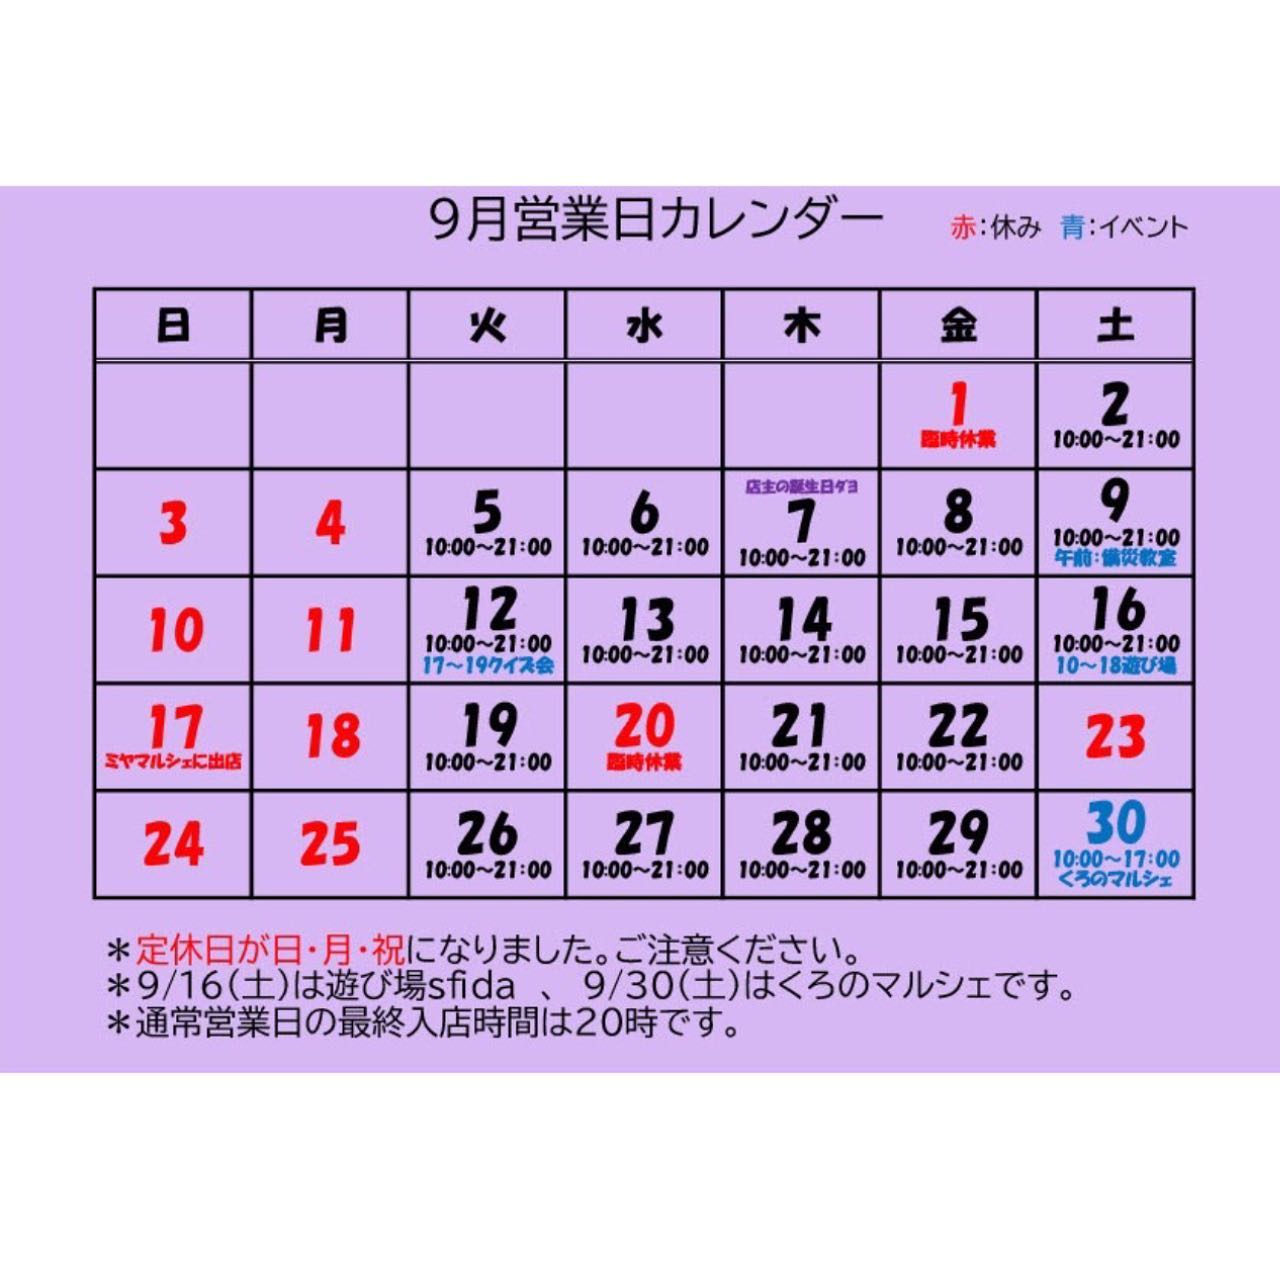 【9月営業カレンダー】